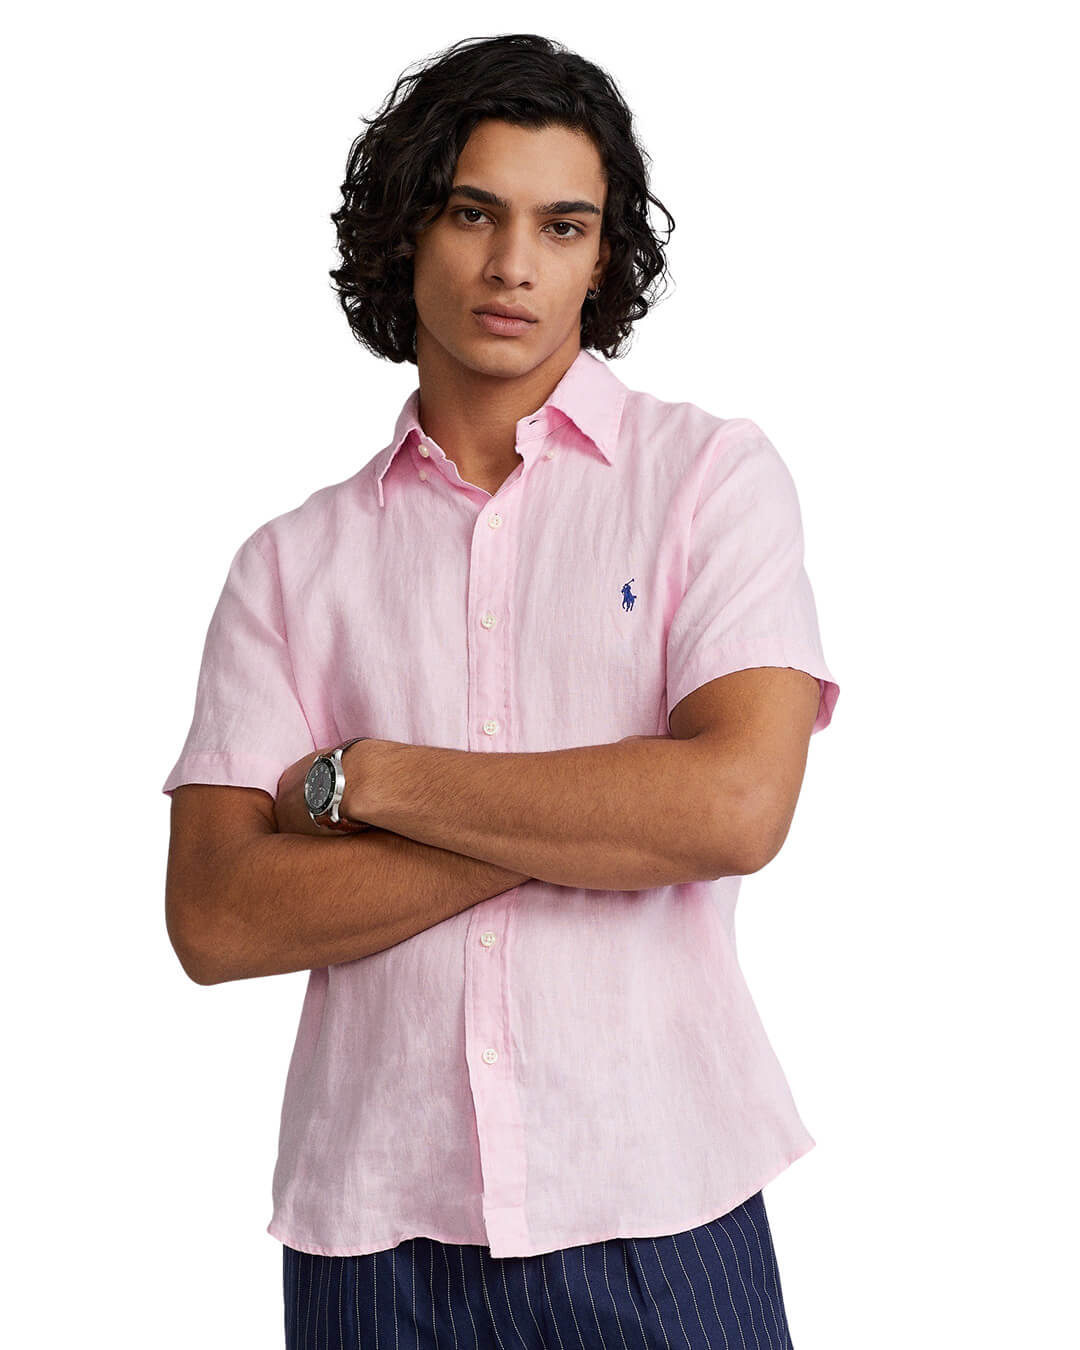 Polo Ralph Lauren Shirts Polo Ralph Lauren Slim Fit Pink Classic Linen Shirt